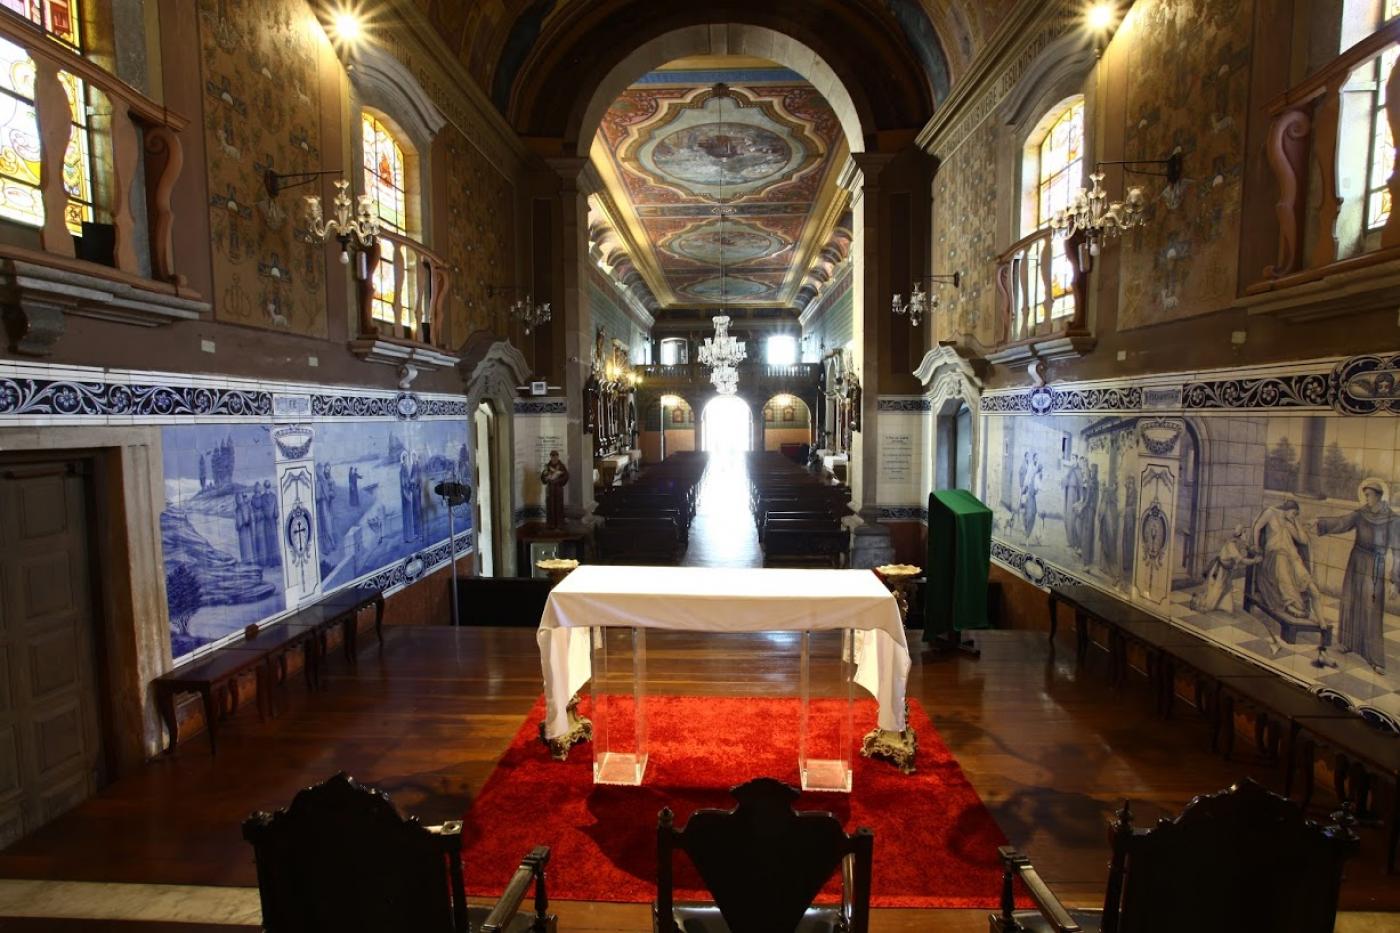 Área interna de igreja católica, vista do altar para a entrada. #Paratodosverem